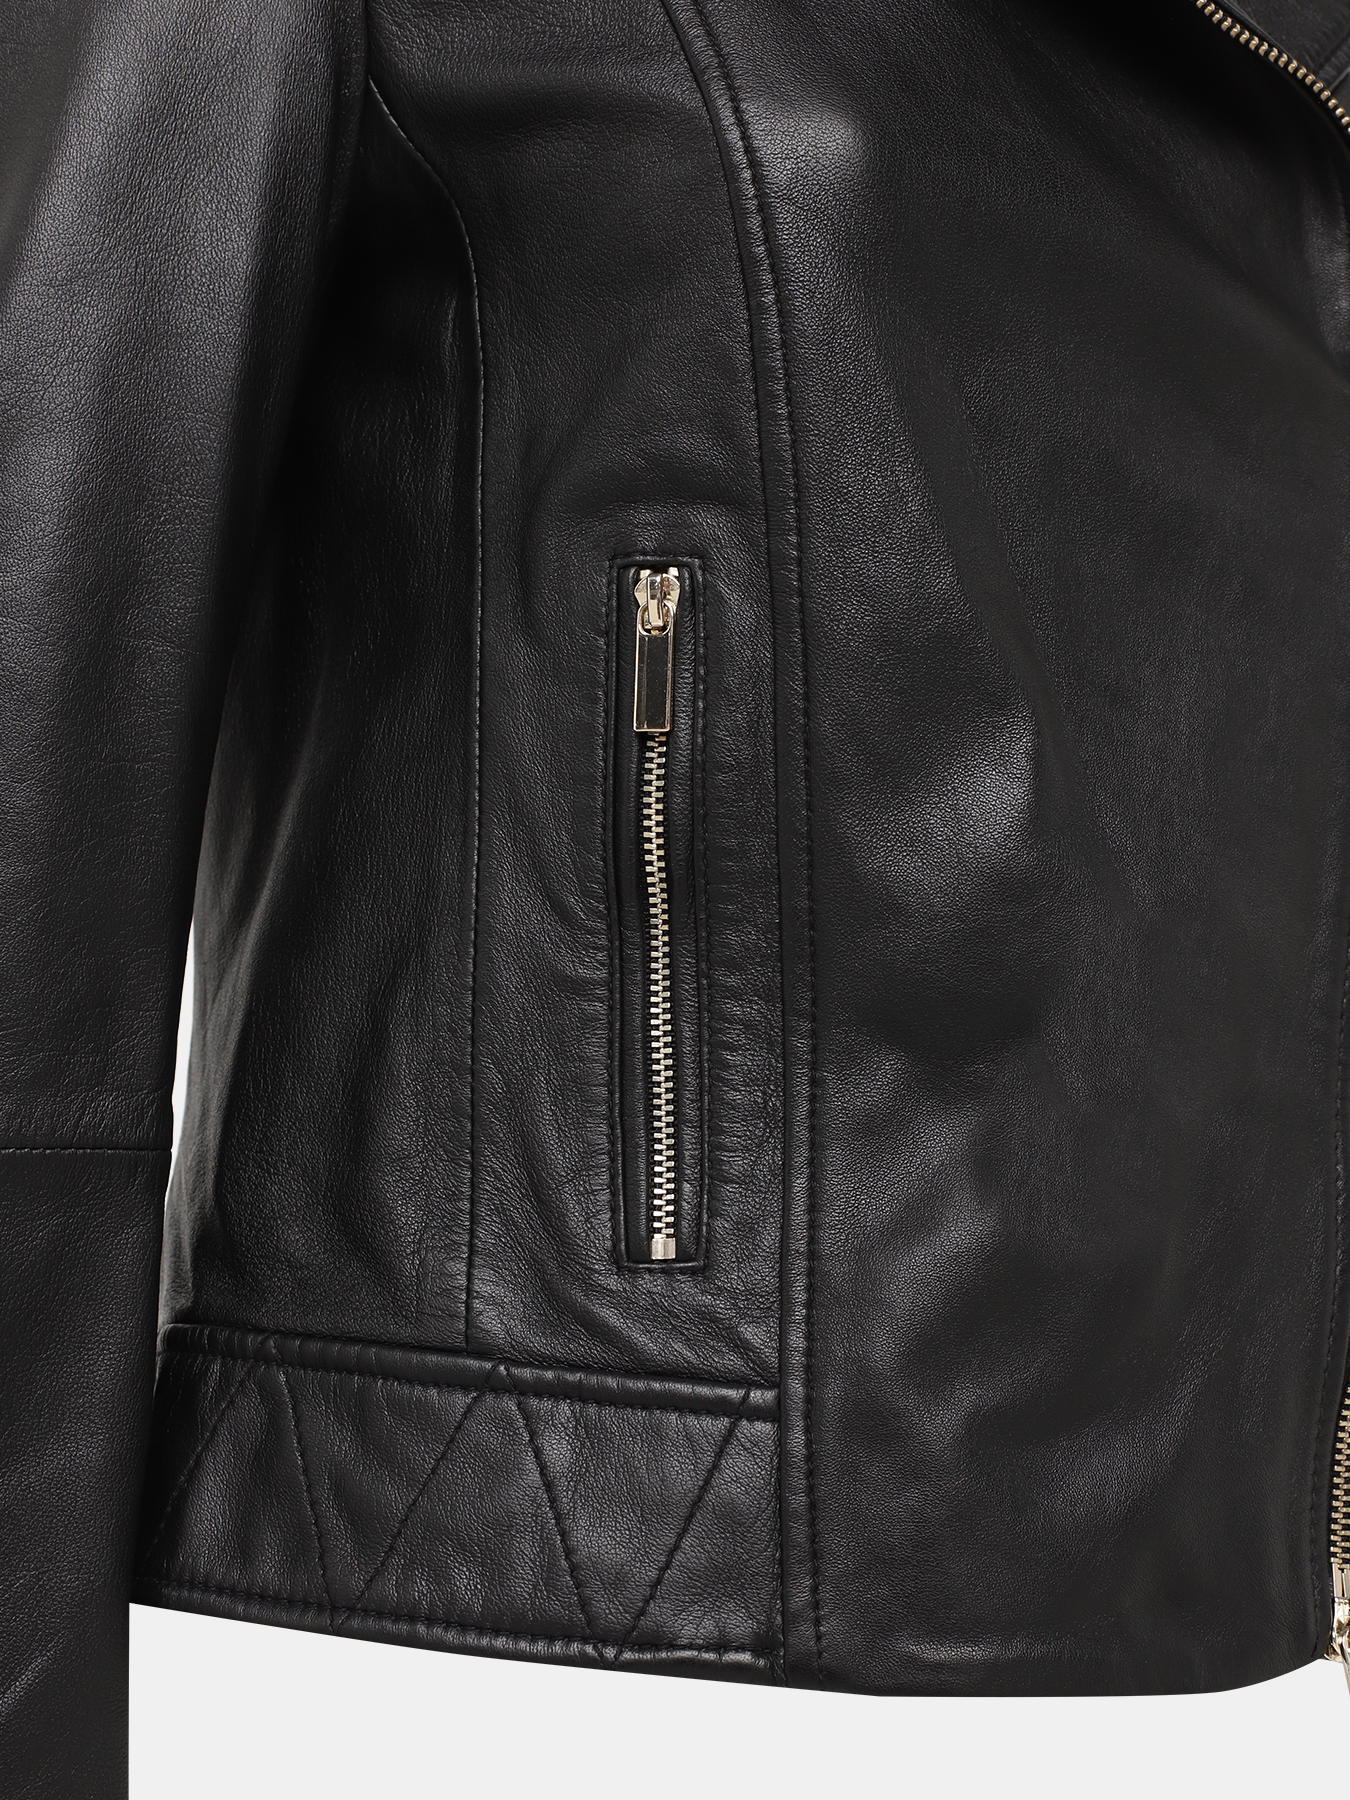 Кожаная куртка Pennyblack 421362-022, цвет черный, размер 44 - фото 5